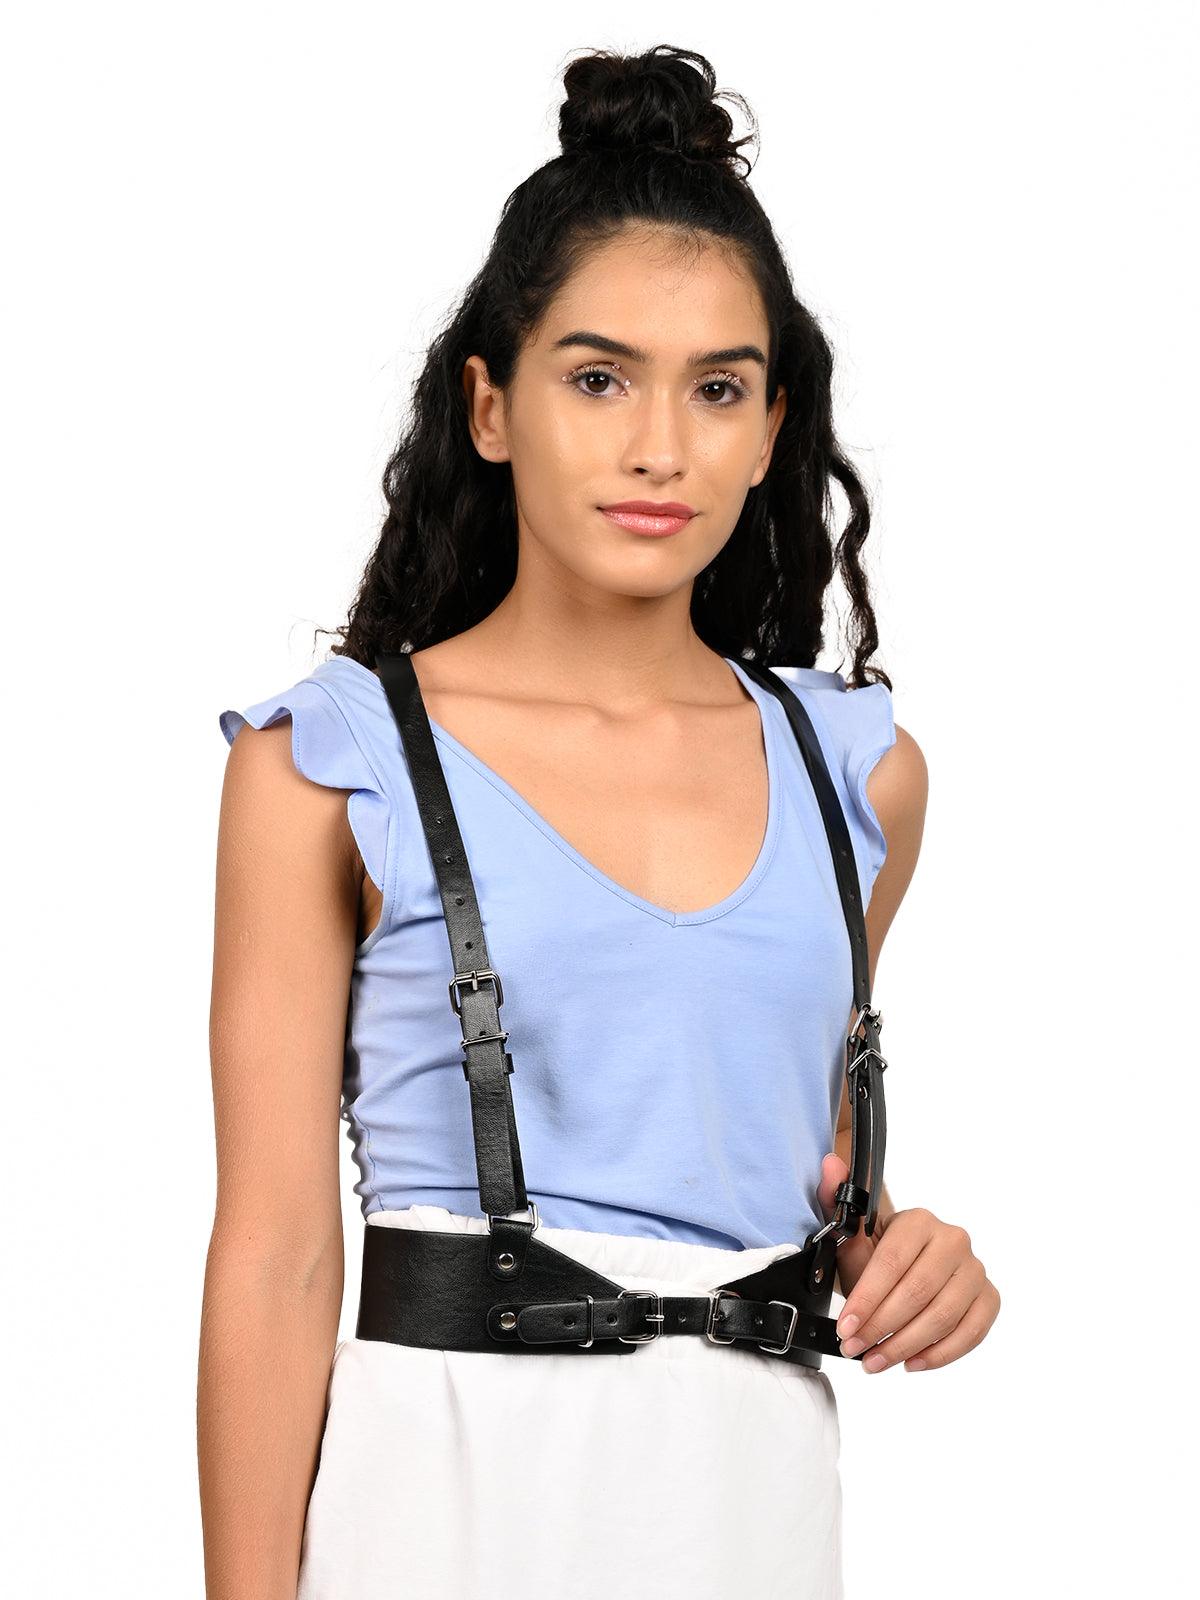 https://odette.in/cdn/shop/products/stylish-black-suspender-belt-for-women-odette-1_1400x.jpg?v=1663163313